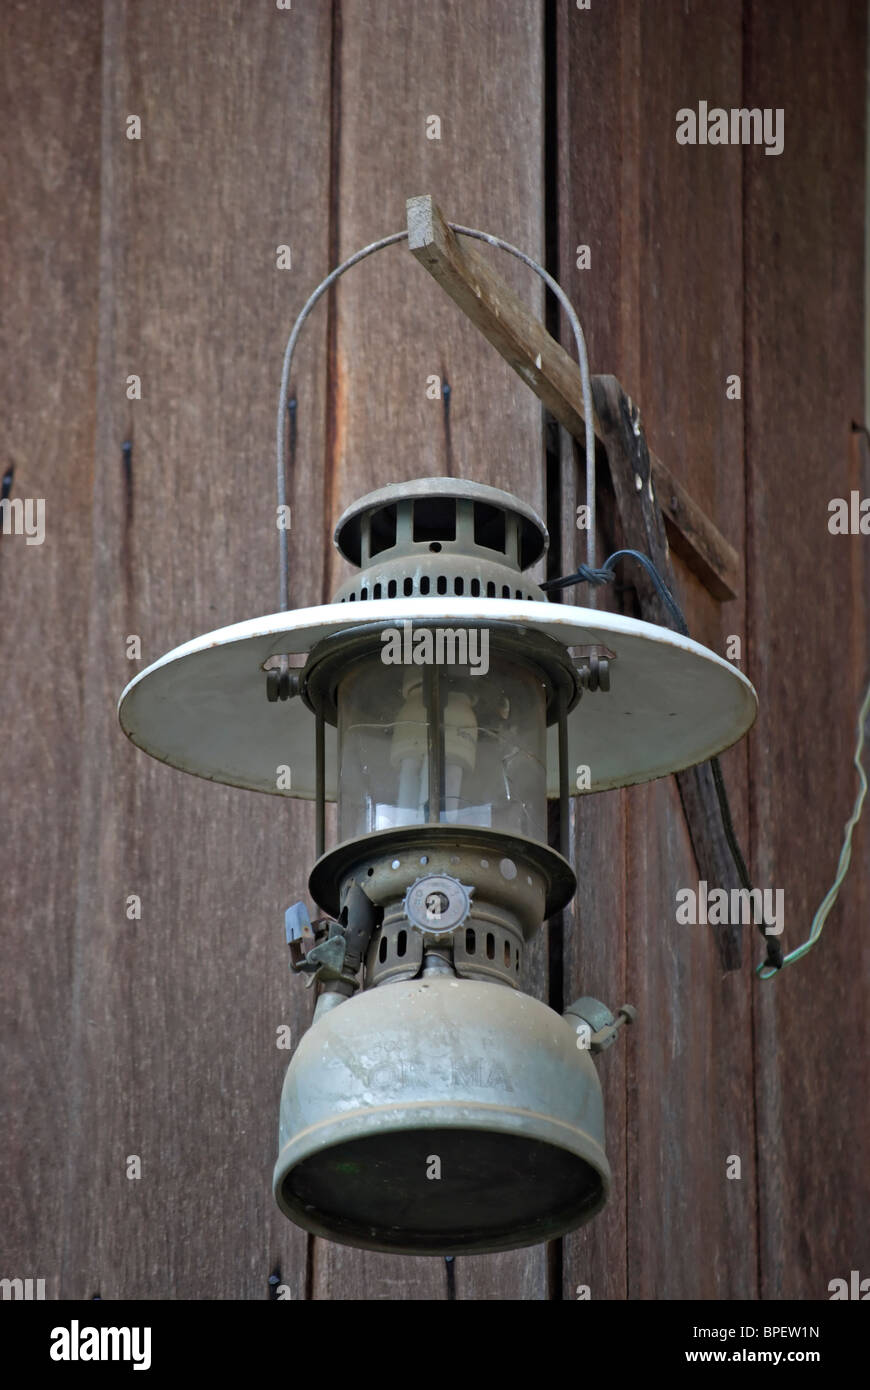 Lampe à pétrole converti pour une utilisation avec l'électricité et tenant une ampoule basse énergie, dans une maison de Phetchabun, Thaïlande, Asie du sud-est Banque D'Images